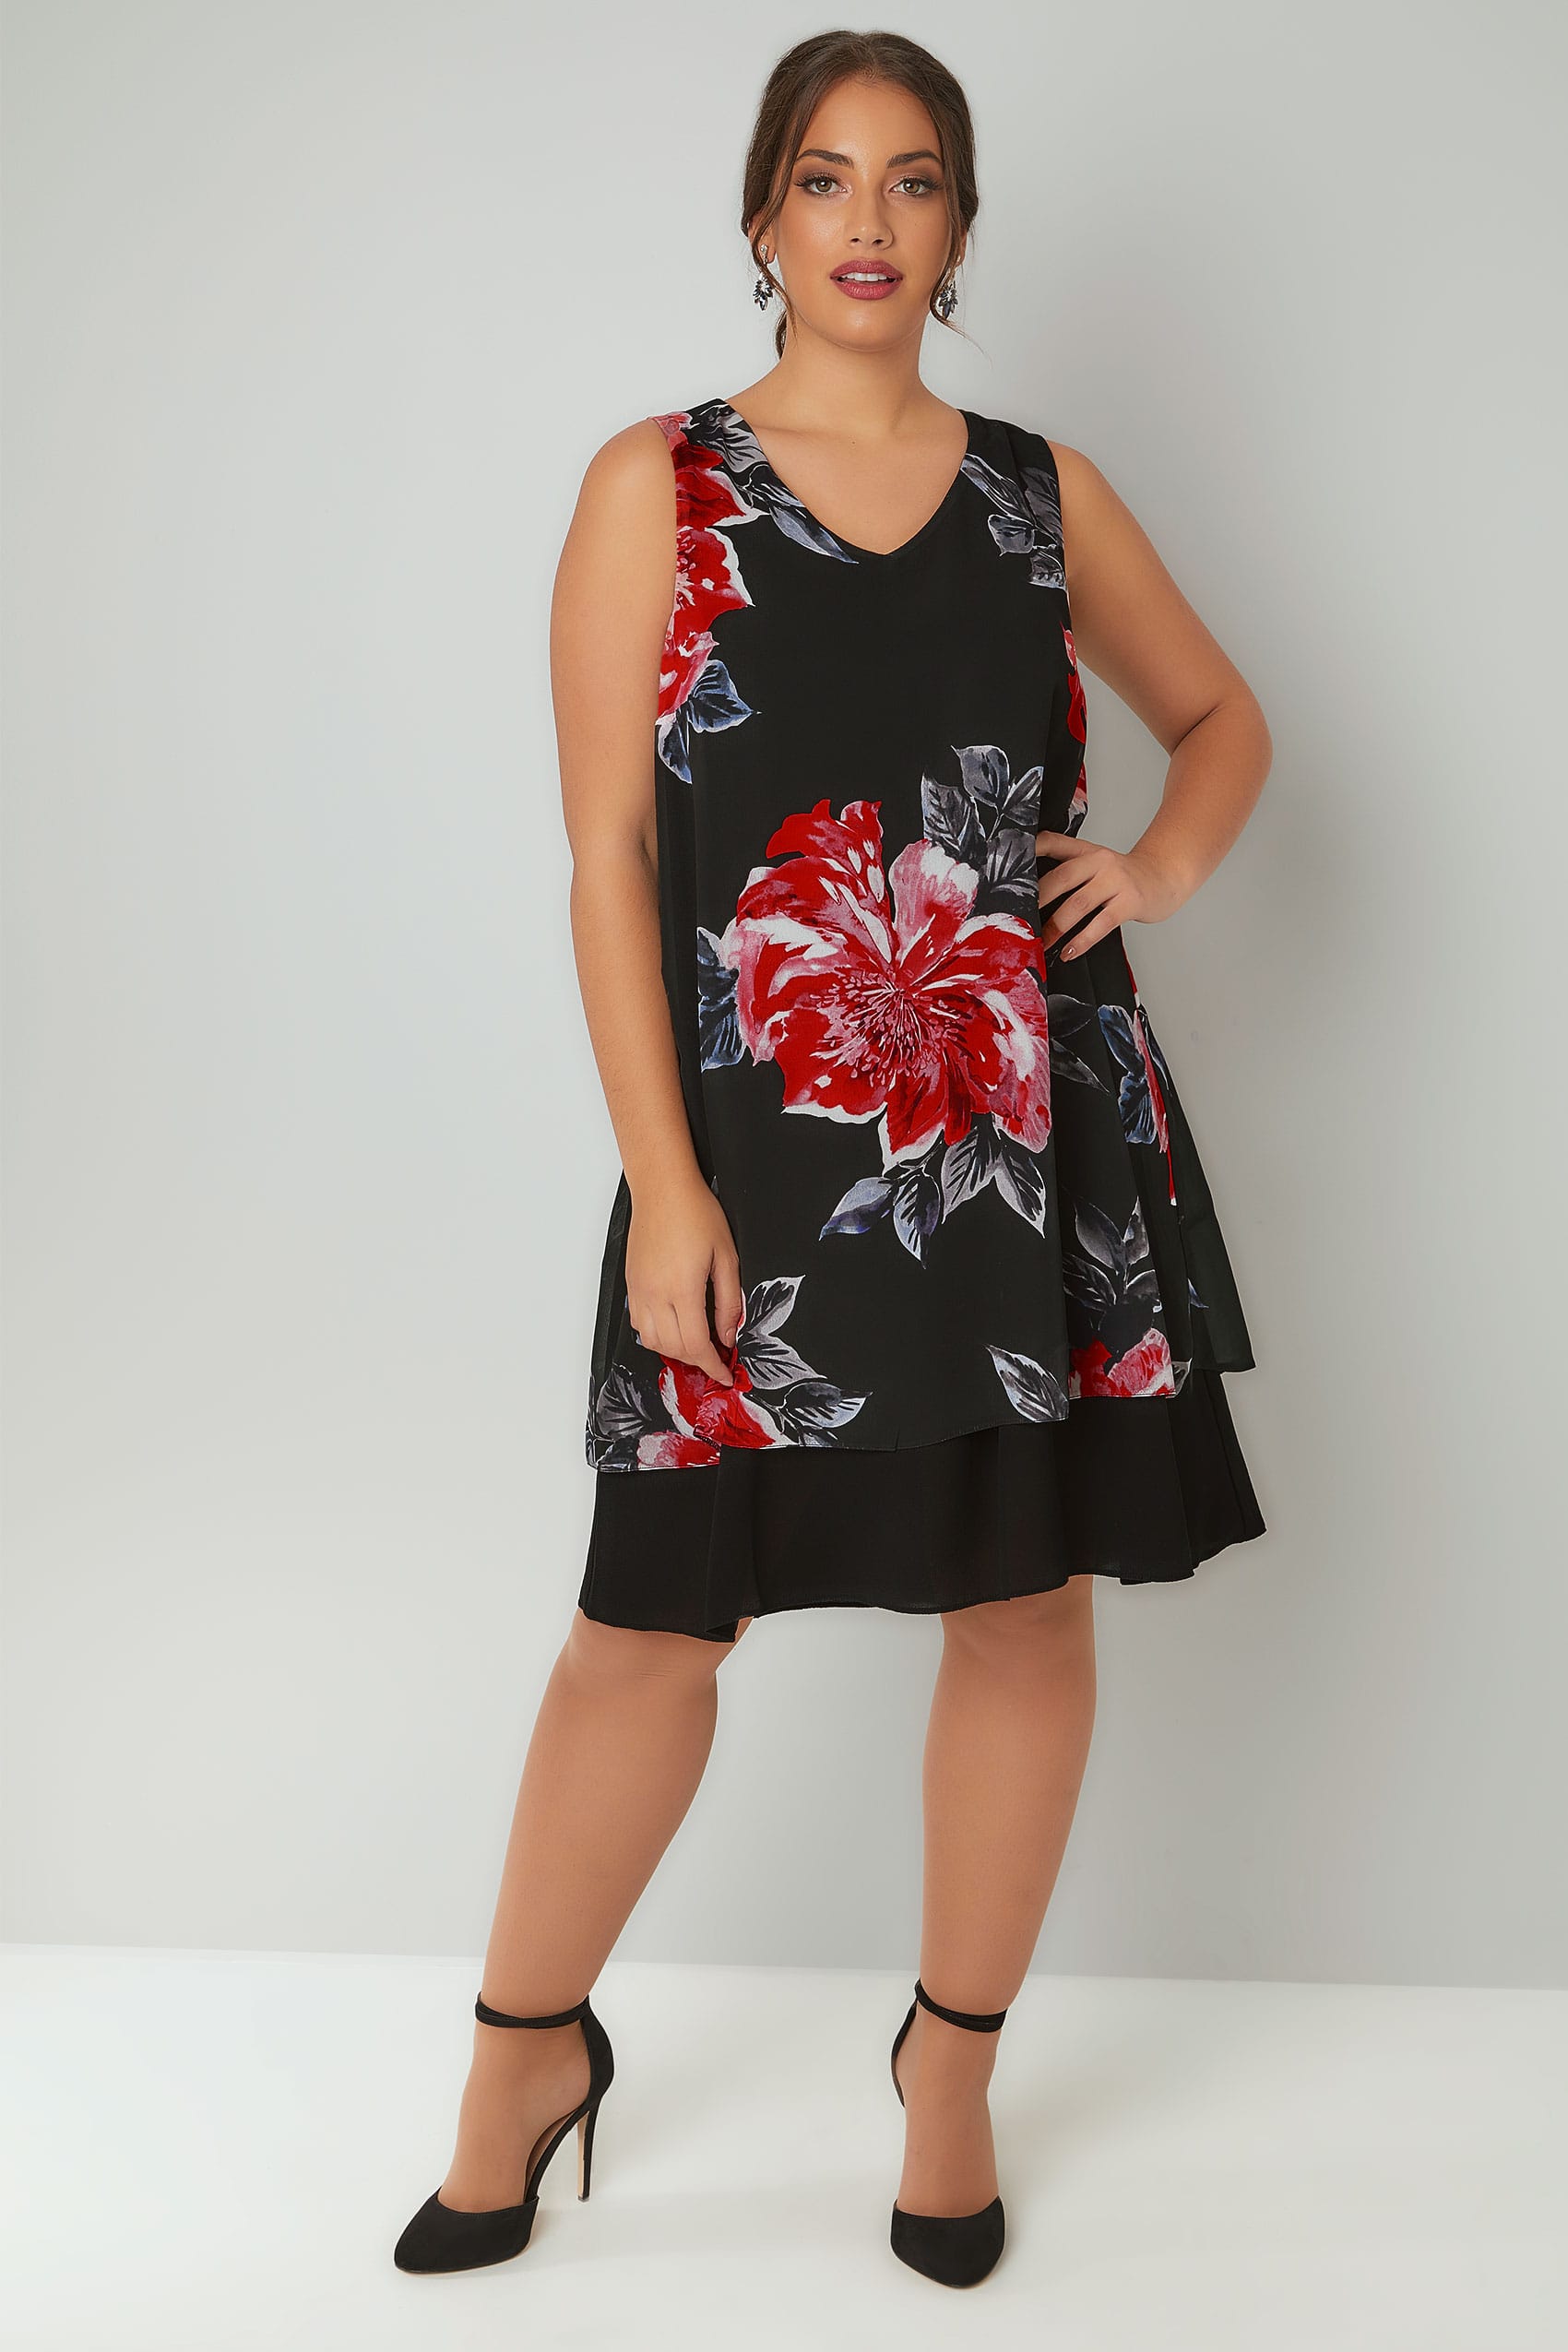 Black & Multi Floral Print Sleeveless Chiffon Layered Dress, Plus size ...